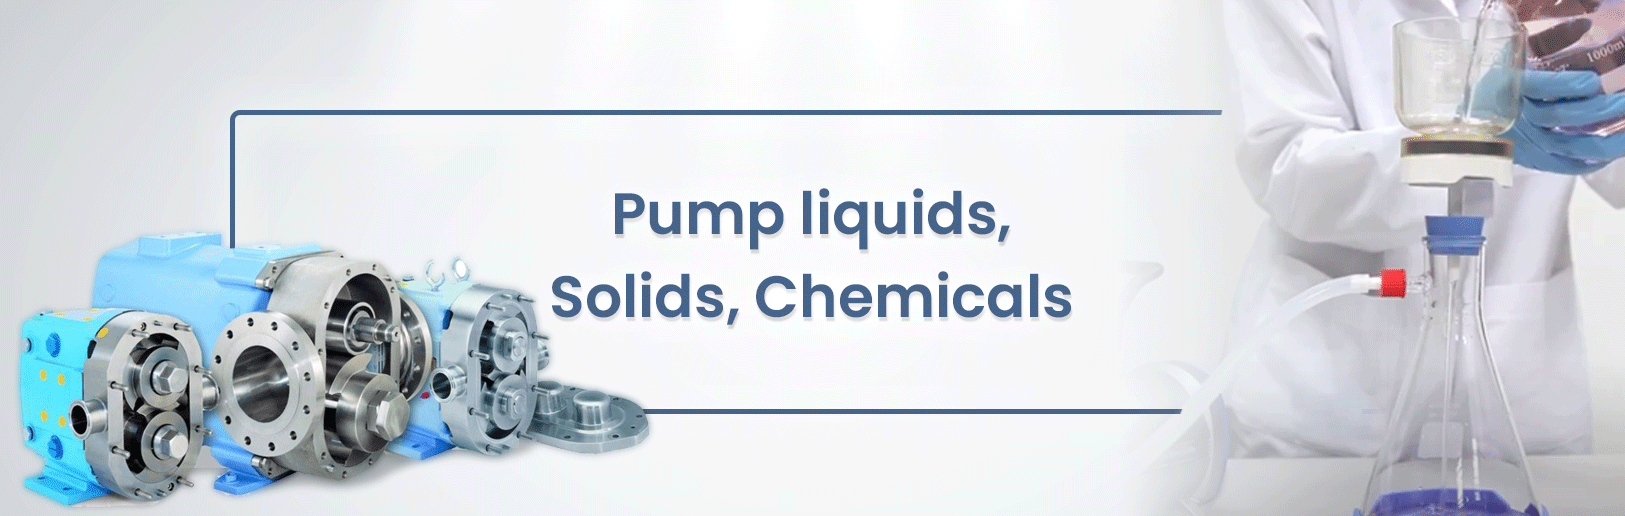 Pump﻿ for liquid, chemicals, food, etc.